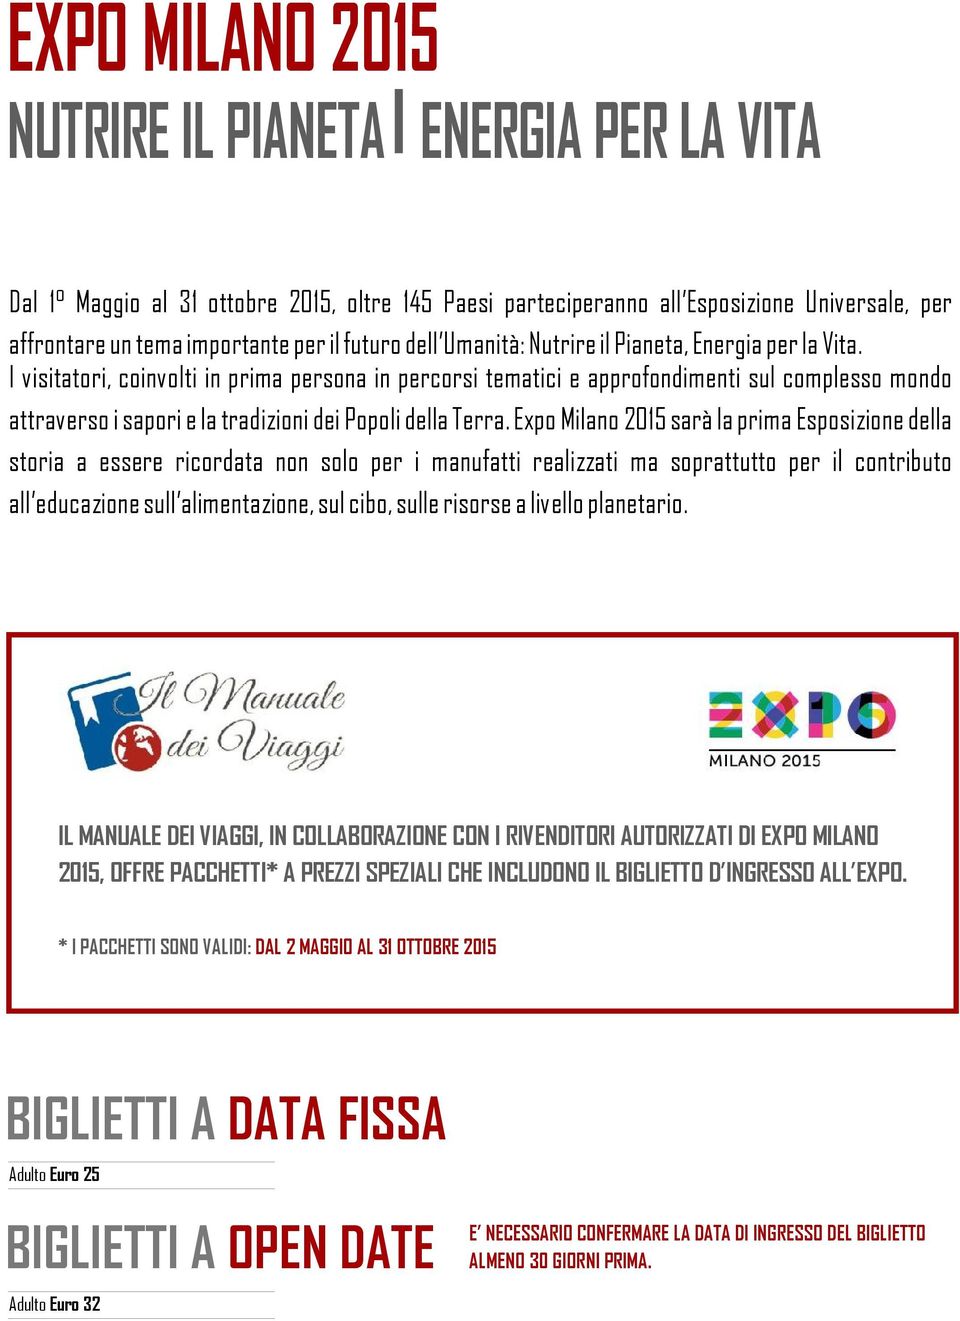 Expo Milano 2015 sarà la prima Esposizione della storia a essere ricordata non solo per i manufatti realizzati ma soprattutto per il contributo all educazione sull alimentazione, sul cibo, sulle